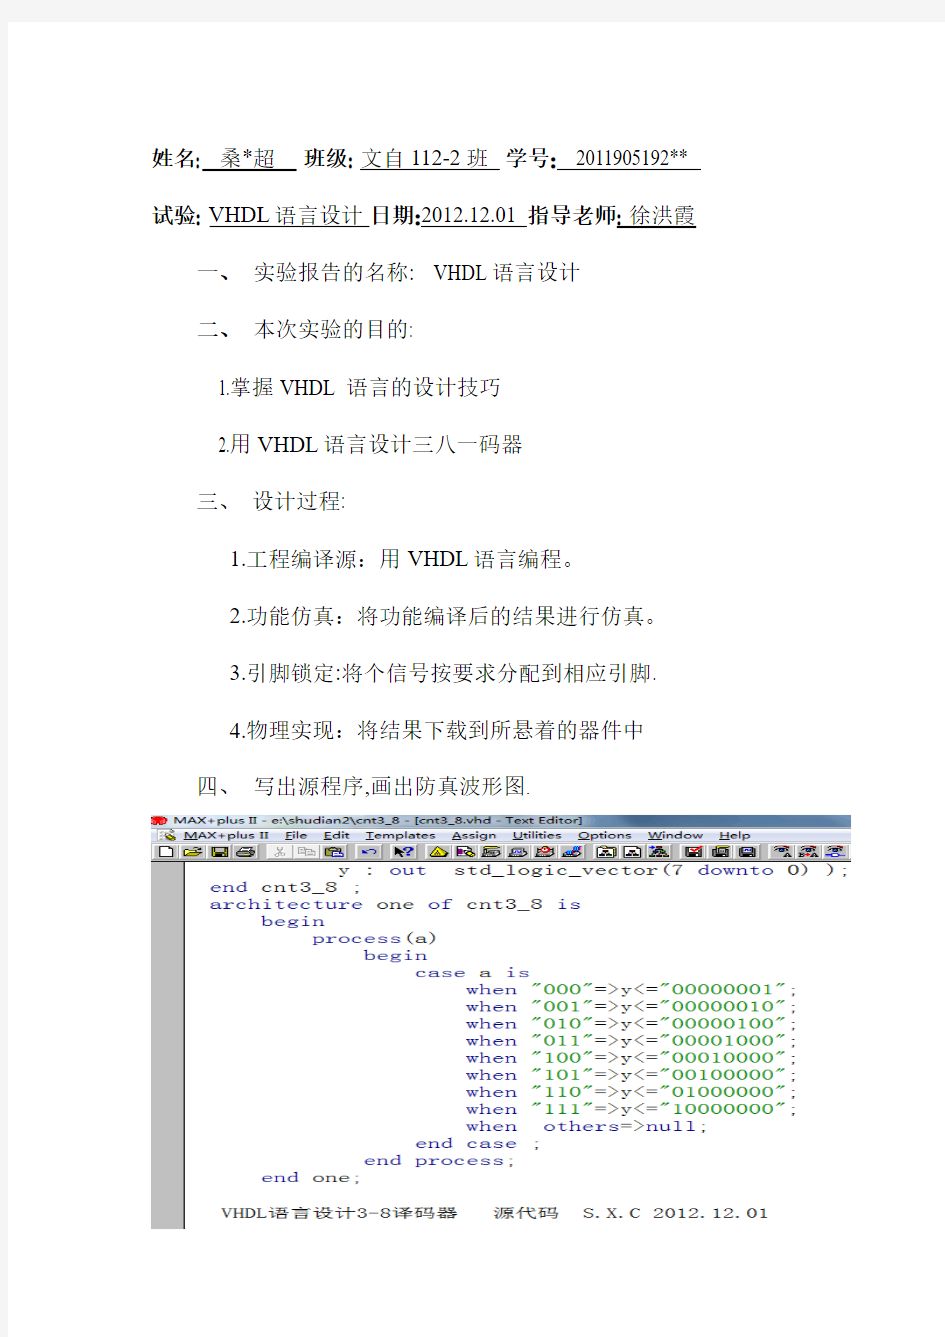 VHDL语言设计三八译码器